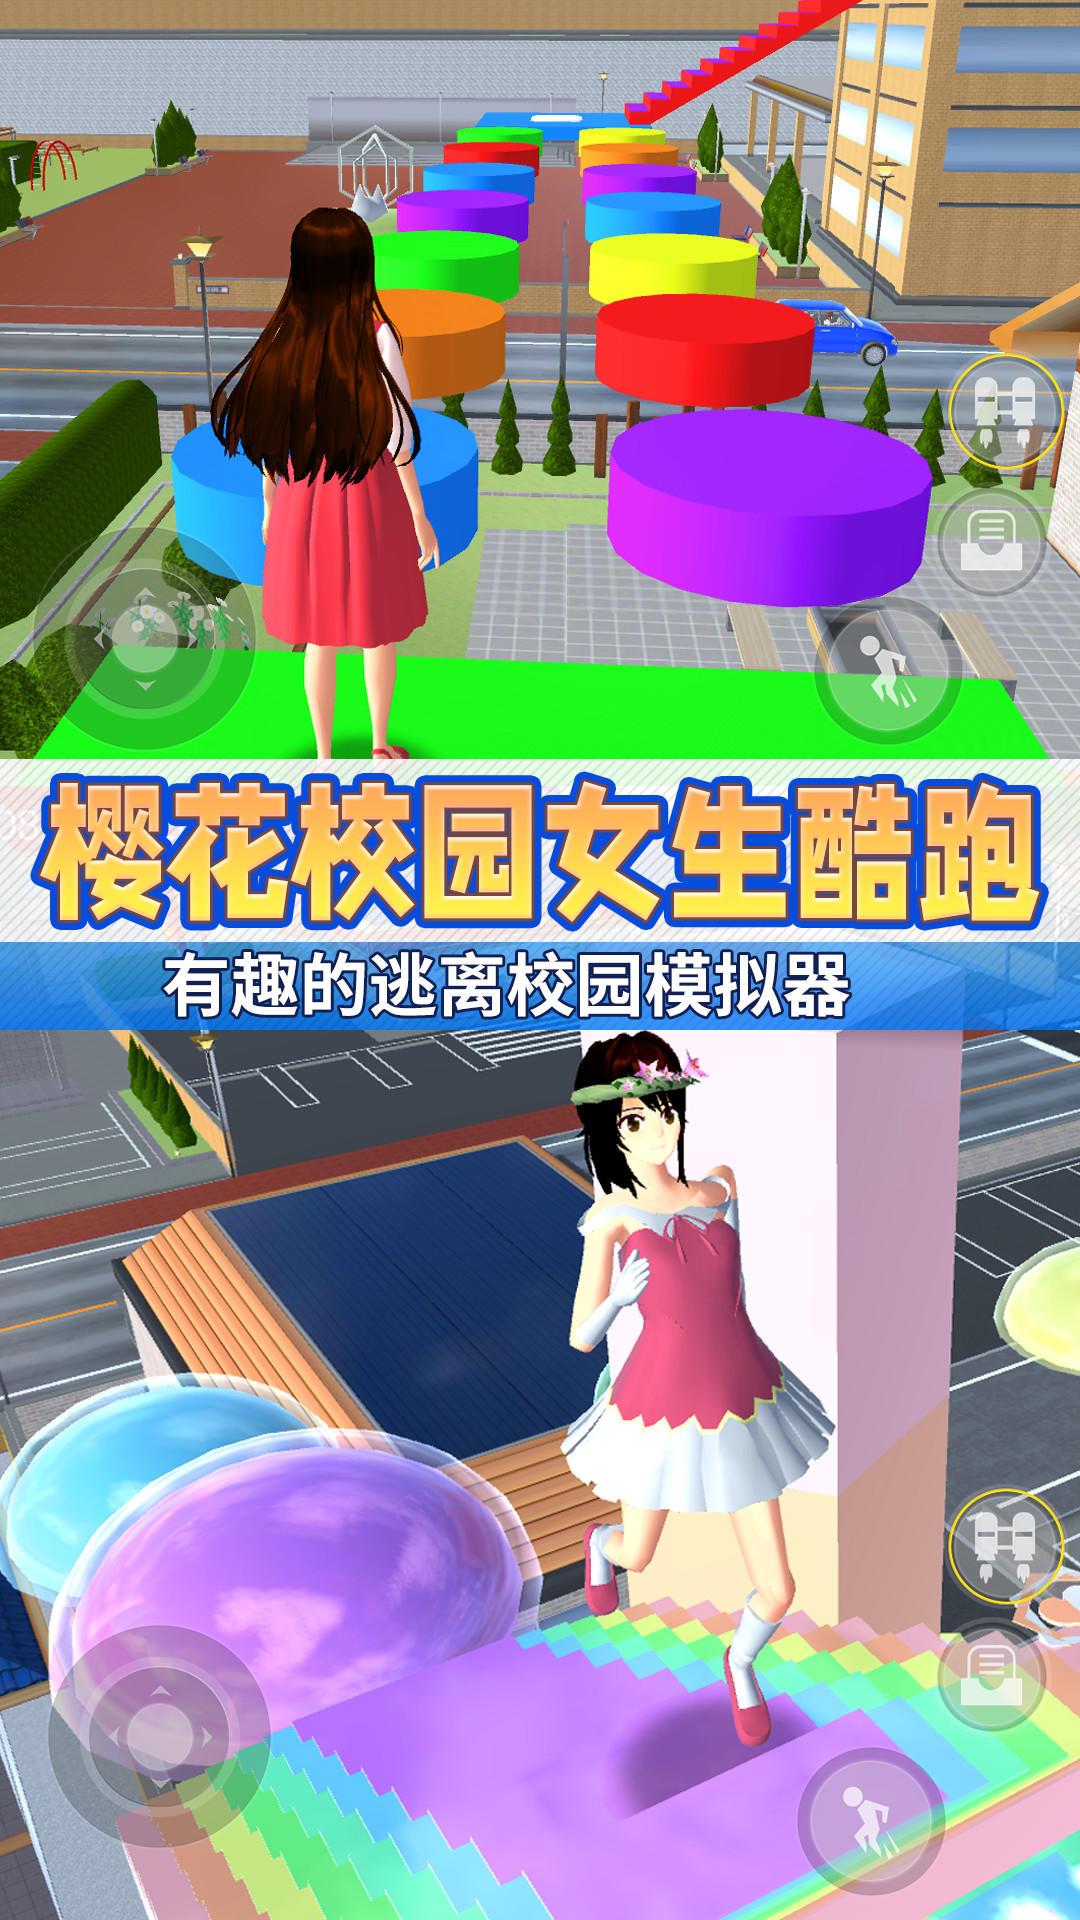 Screenshot 1 of Anime School Girl Parkour 3D 1.0.0